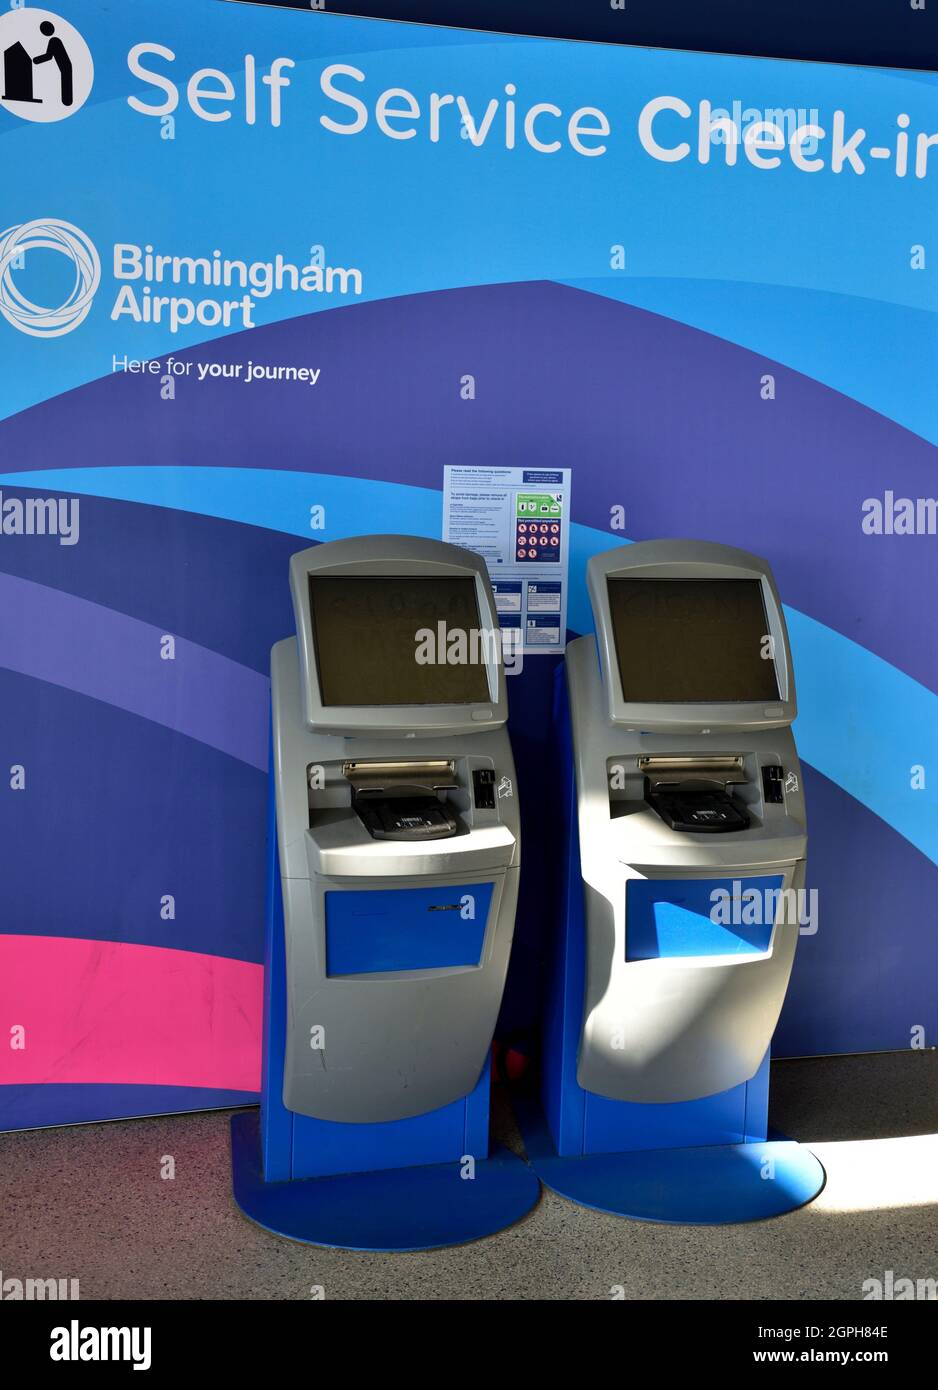 All'interno della stazione ferroviaria internazionale di Birmingham, macchine per il check-in self-service Foto Stock